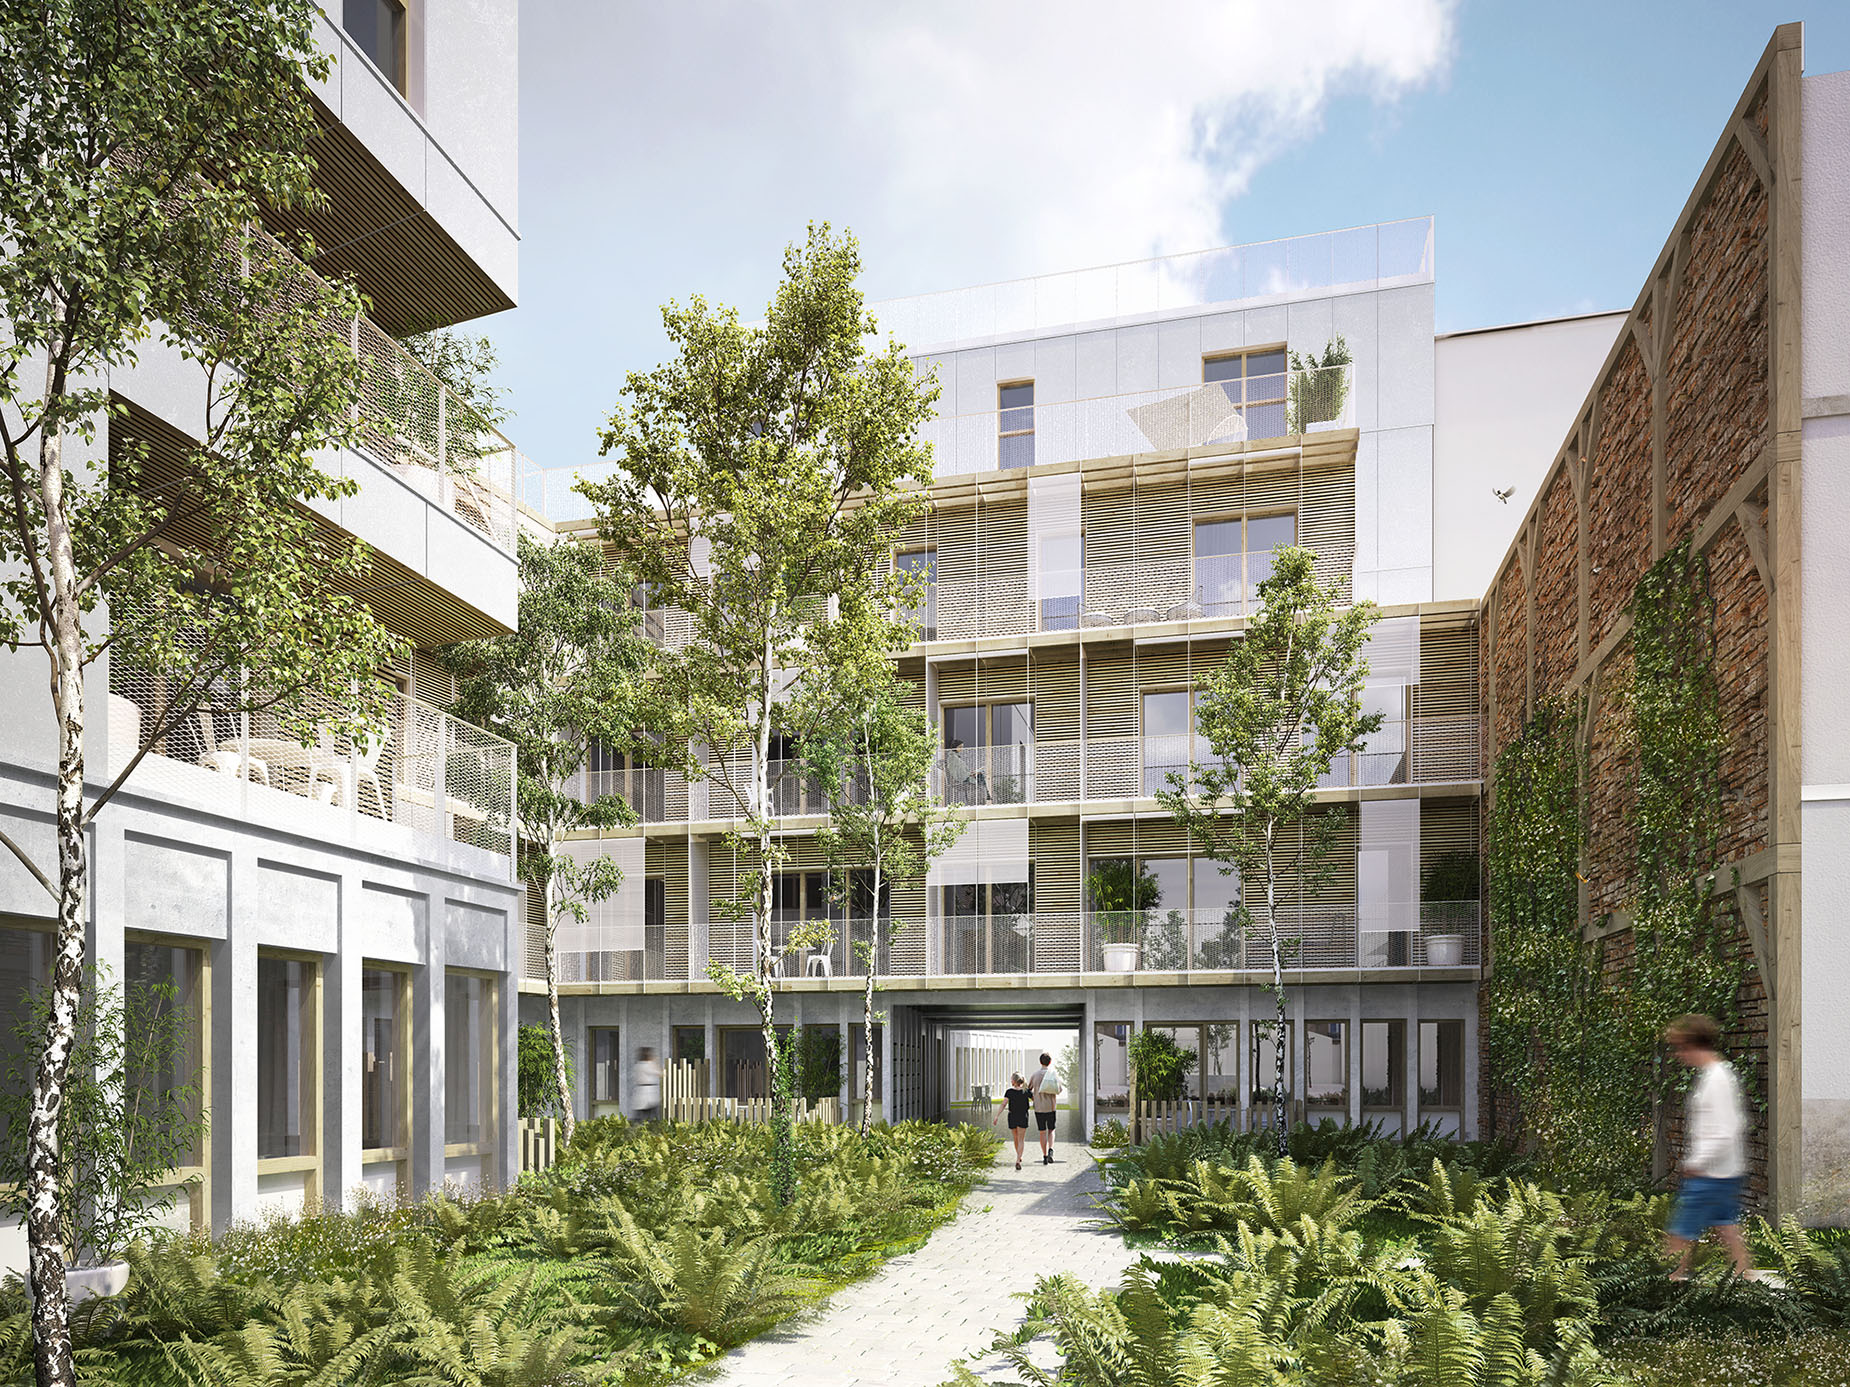 50 logements en structure bois à Paris XXe (chantier) - Perspective depuis la cour ouest